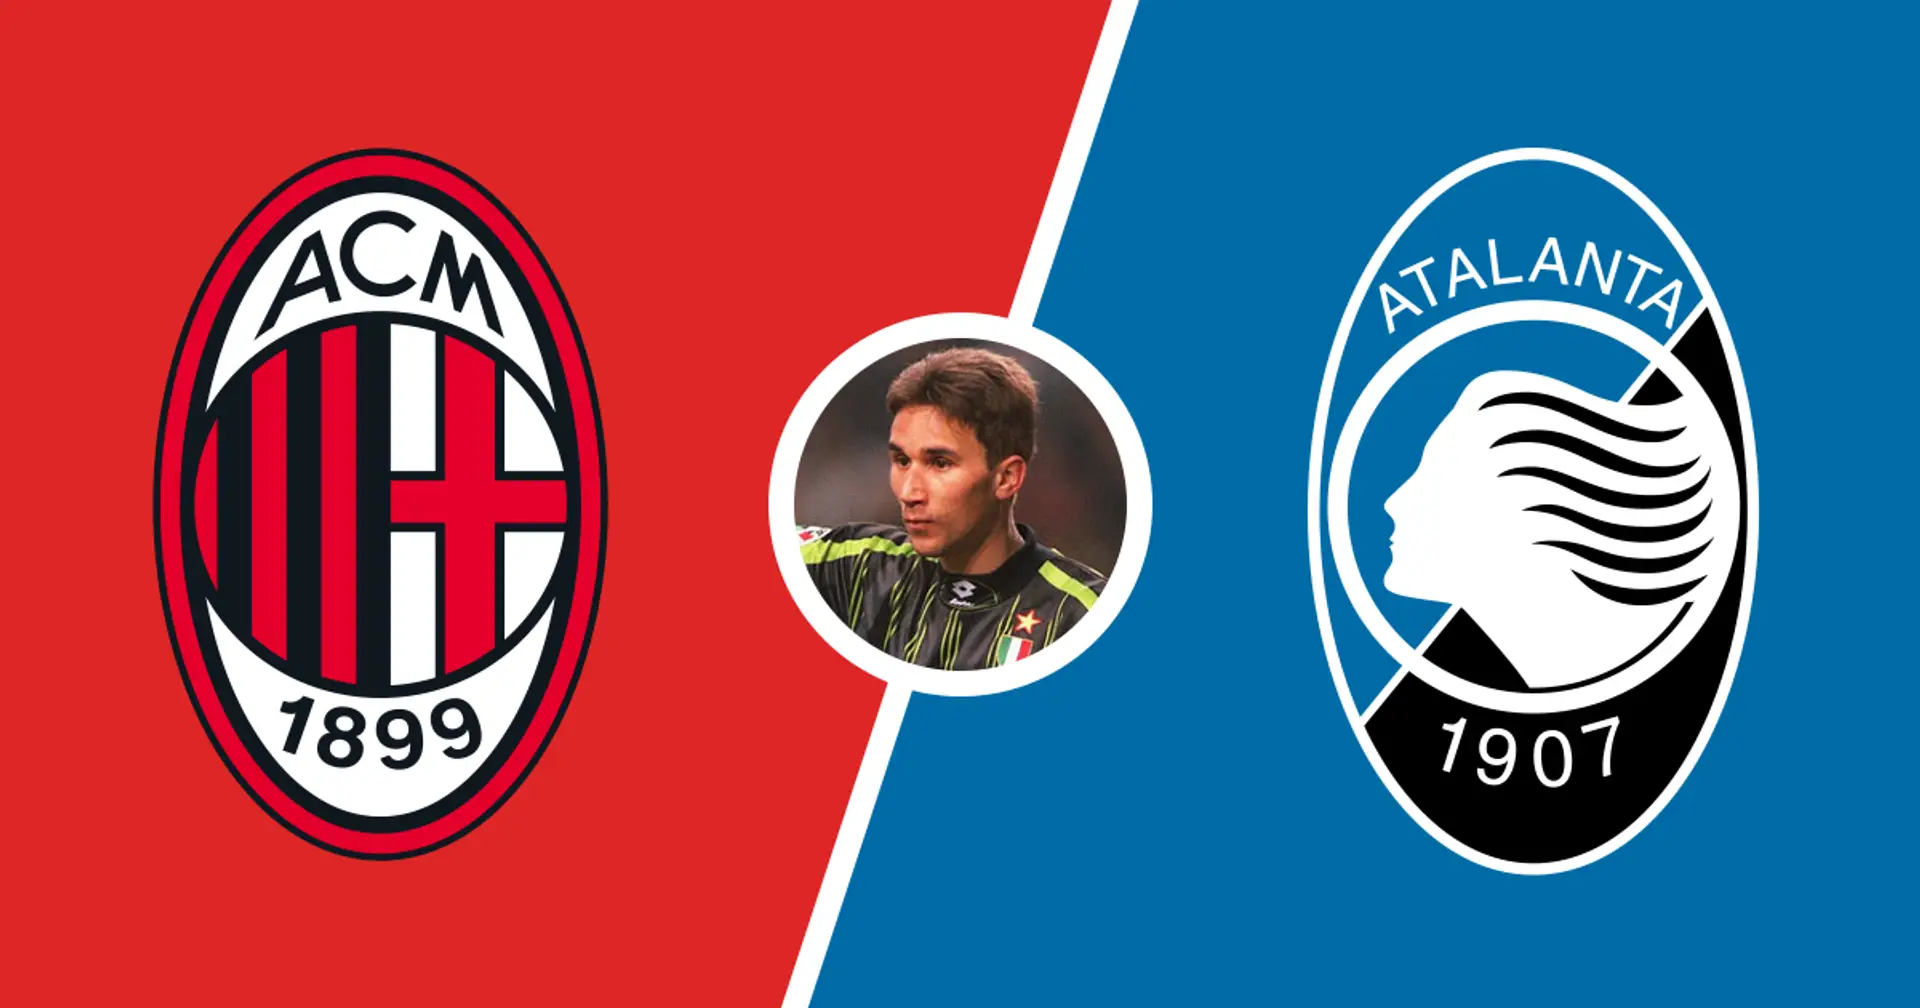 "Questo è un anno di transizione": L'ex rossonero Pagotto descrive la sfida tra Milan e Atalanta